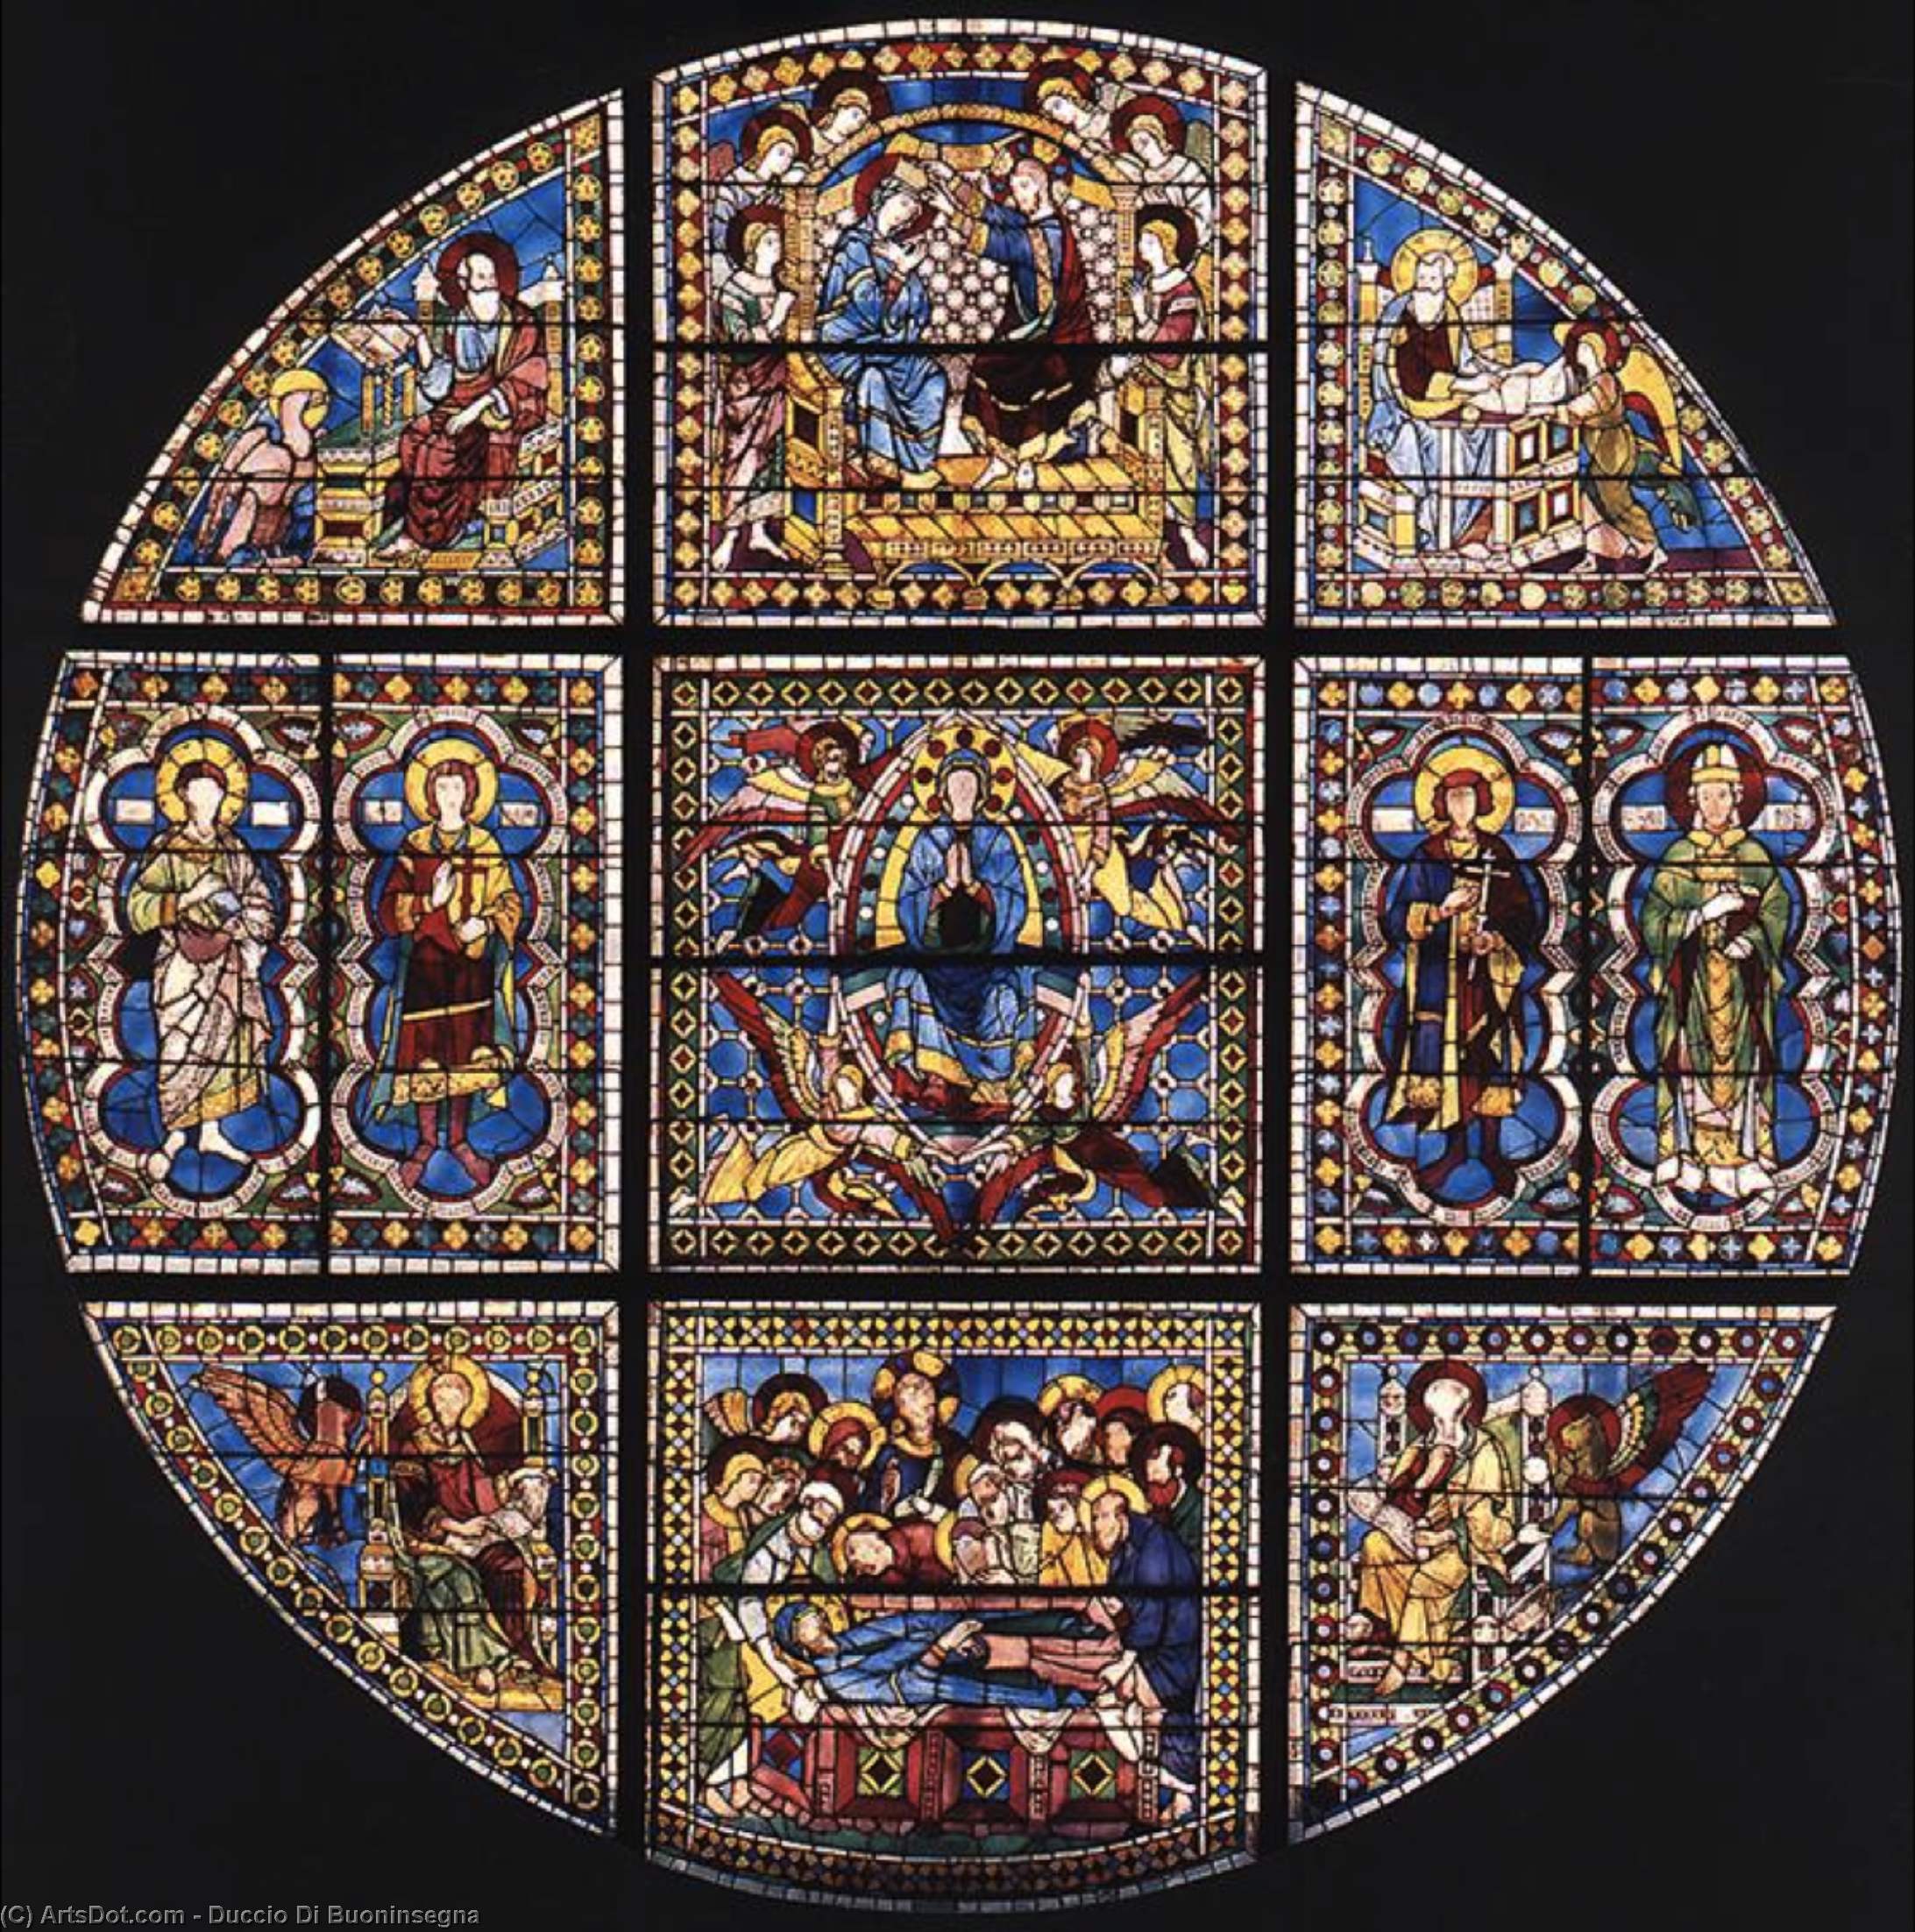 WikiOO.org - Encyclopedia of Fine Arts - Maleri, Artwork Duccio Di Buoninsegna - Window